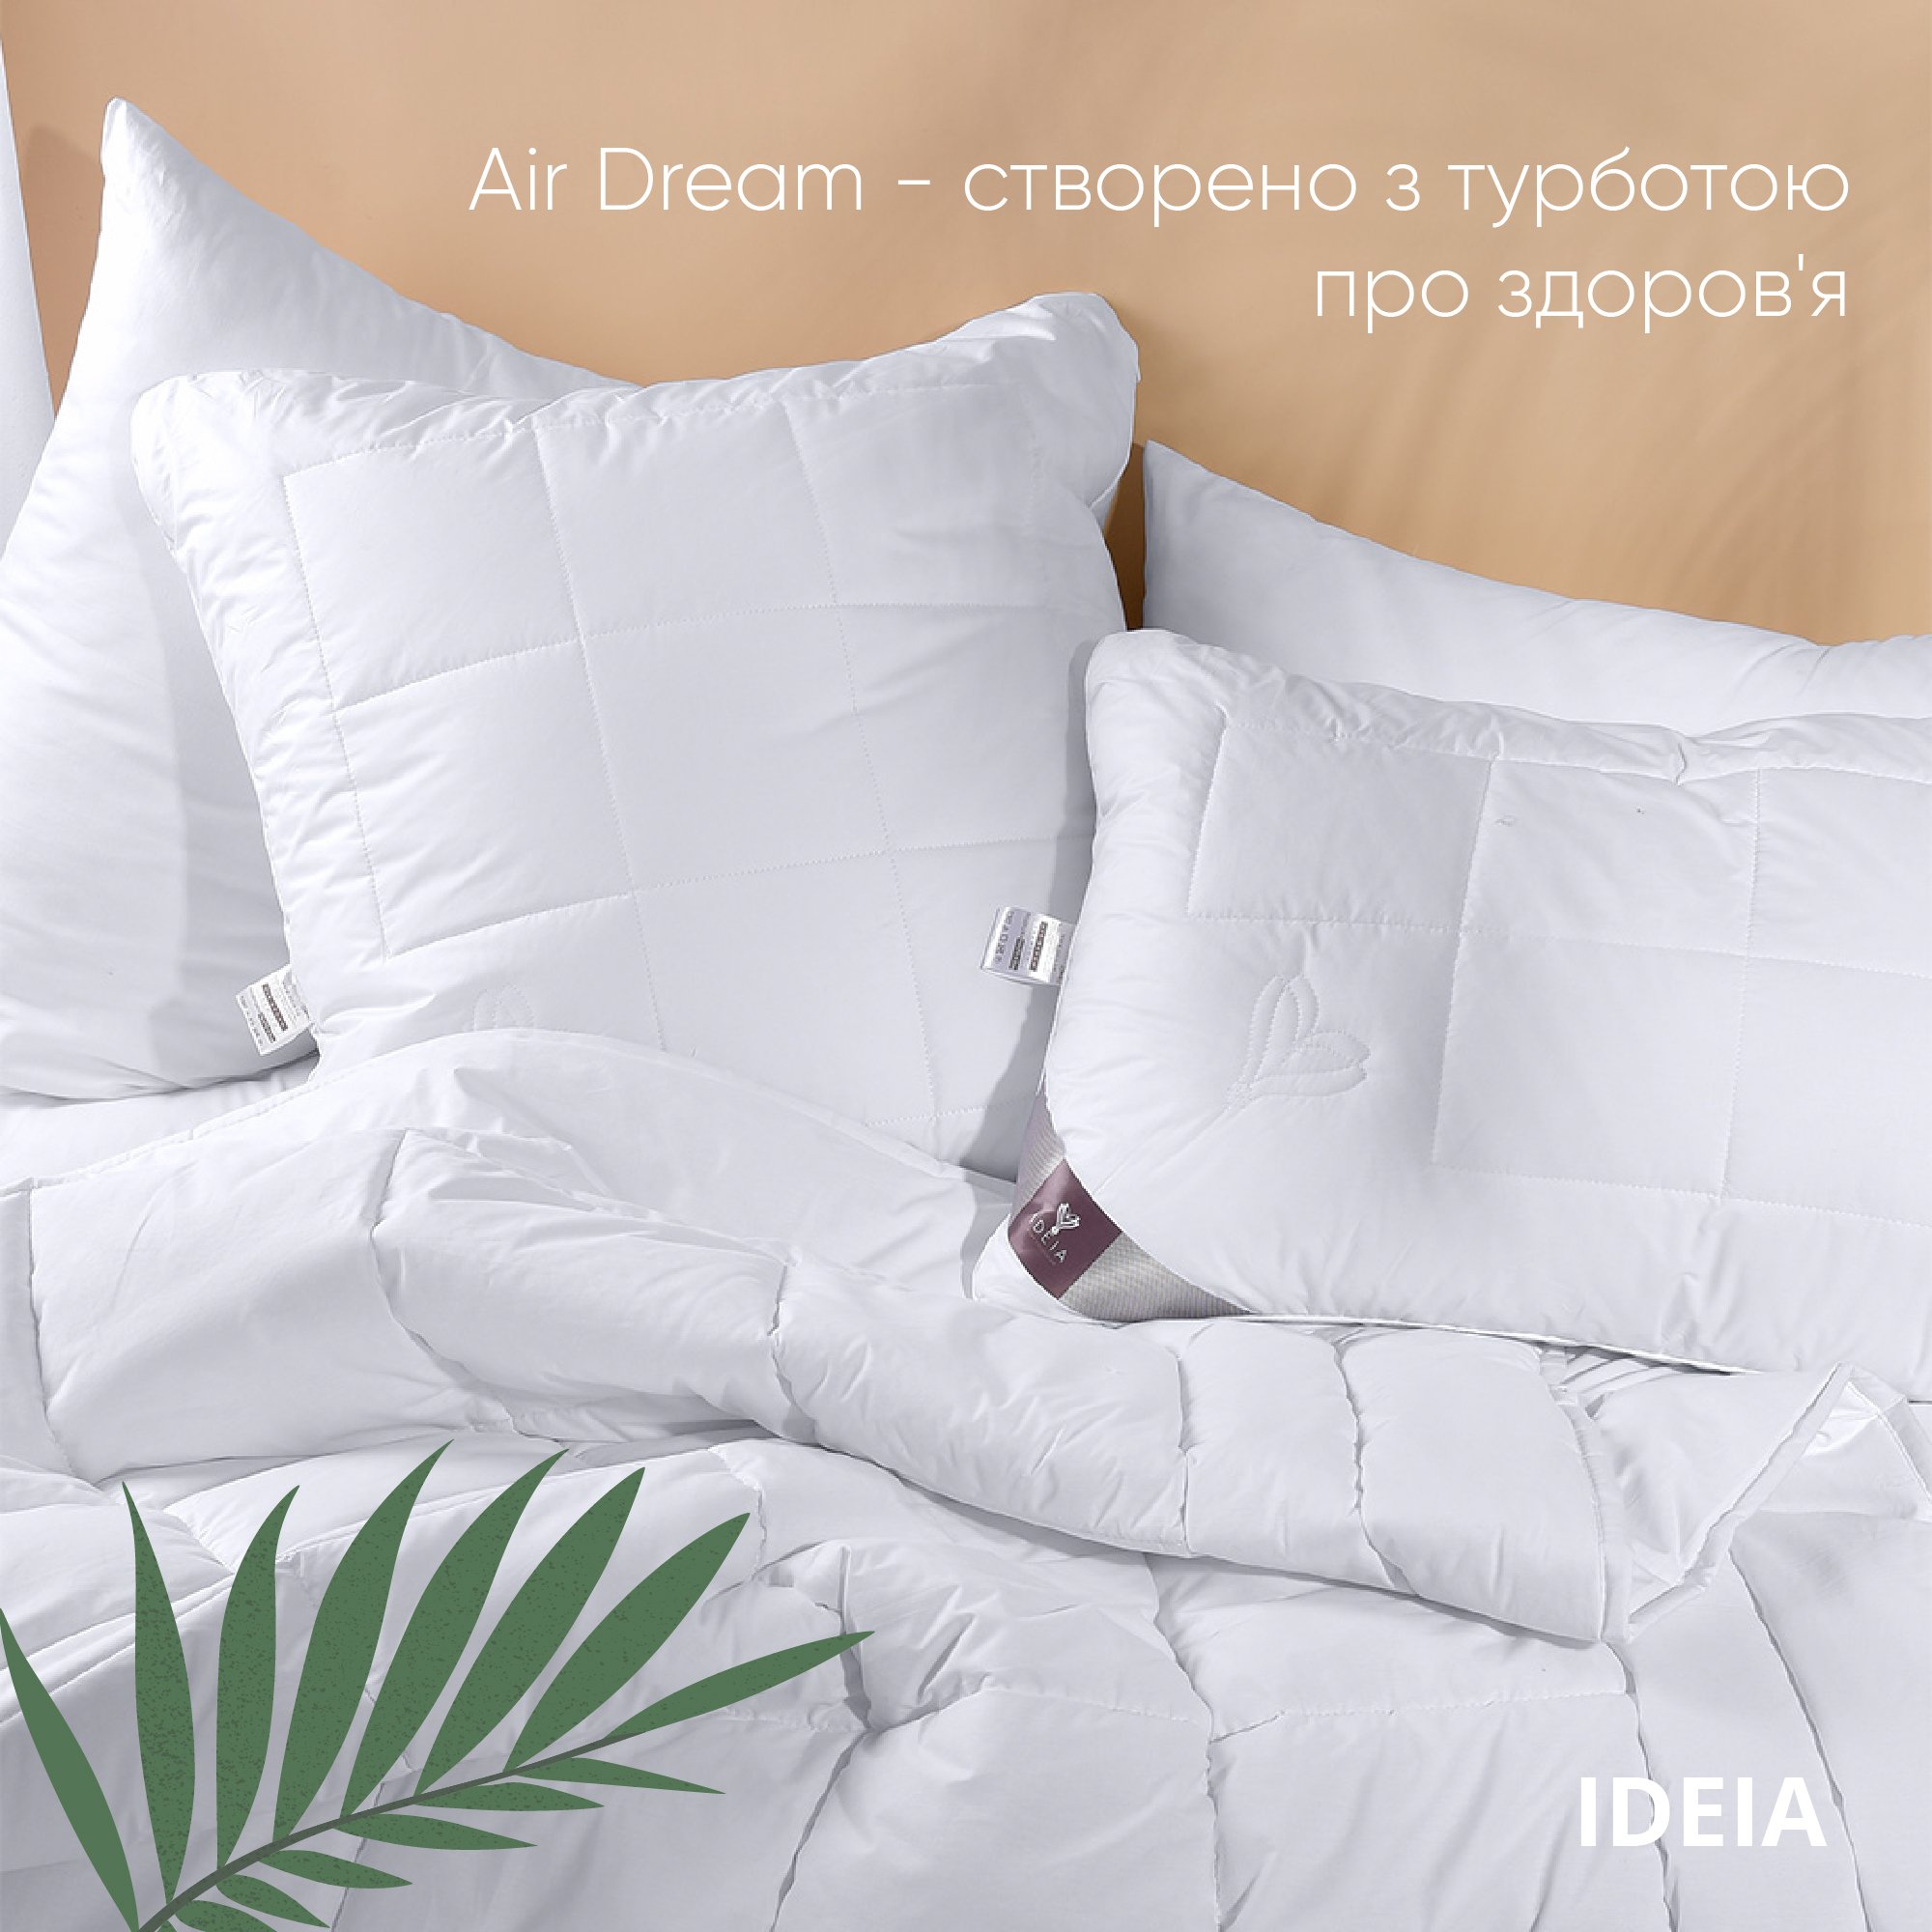 Ковдра Ideia Air Dream Premium зимова, 210х175, білий (8-11698) - фото 5